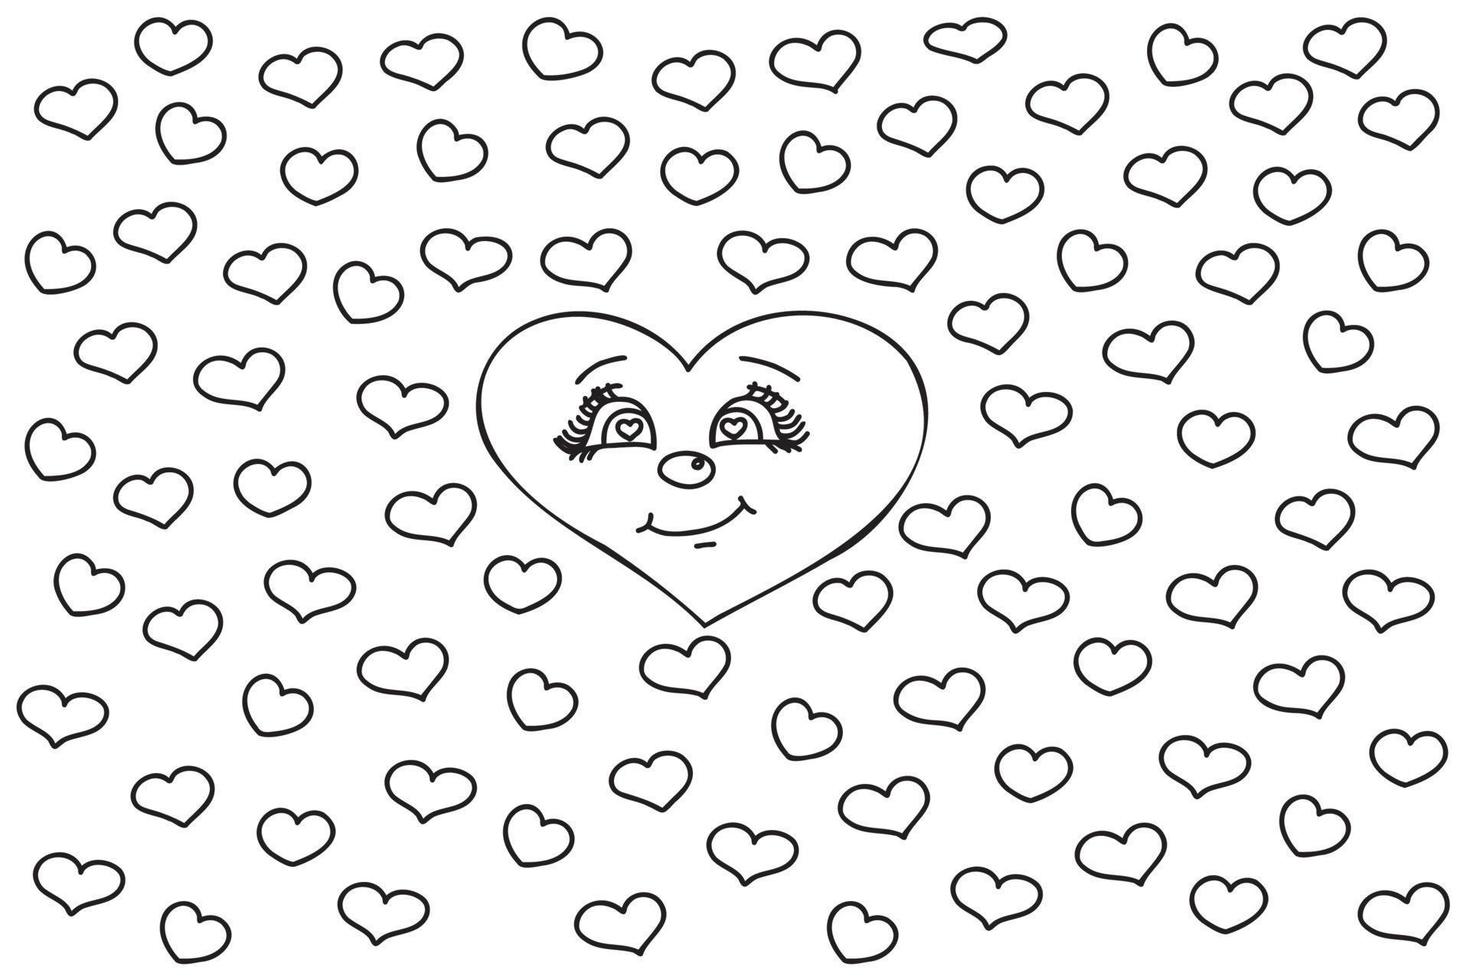 dessiné avec un visage de coeur entouré de petits coeurs destinés aux vacances de l'amour, de la Saint-Valentin, du 8 mars, des cartes, des estampes et d'autres occasions. vecteur